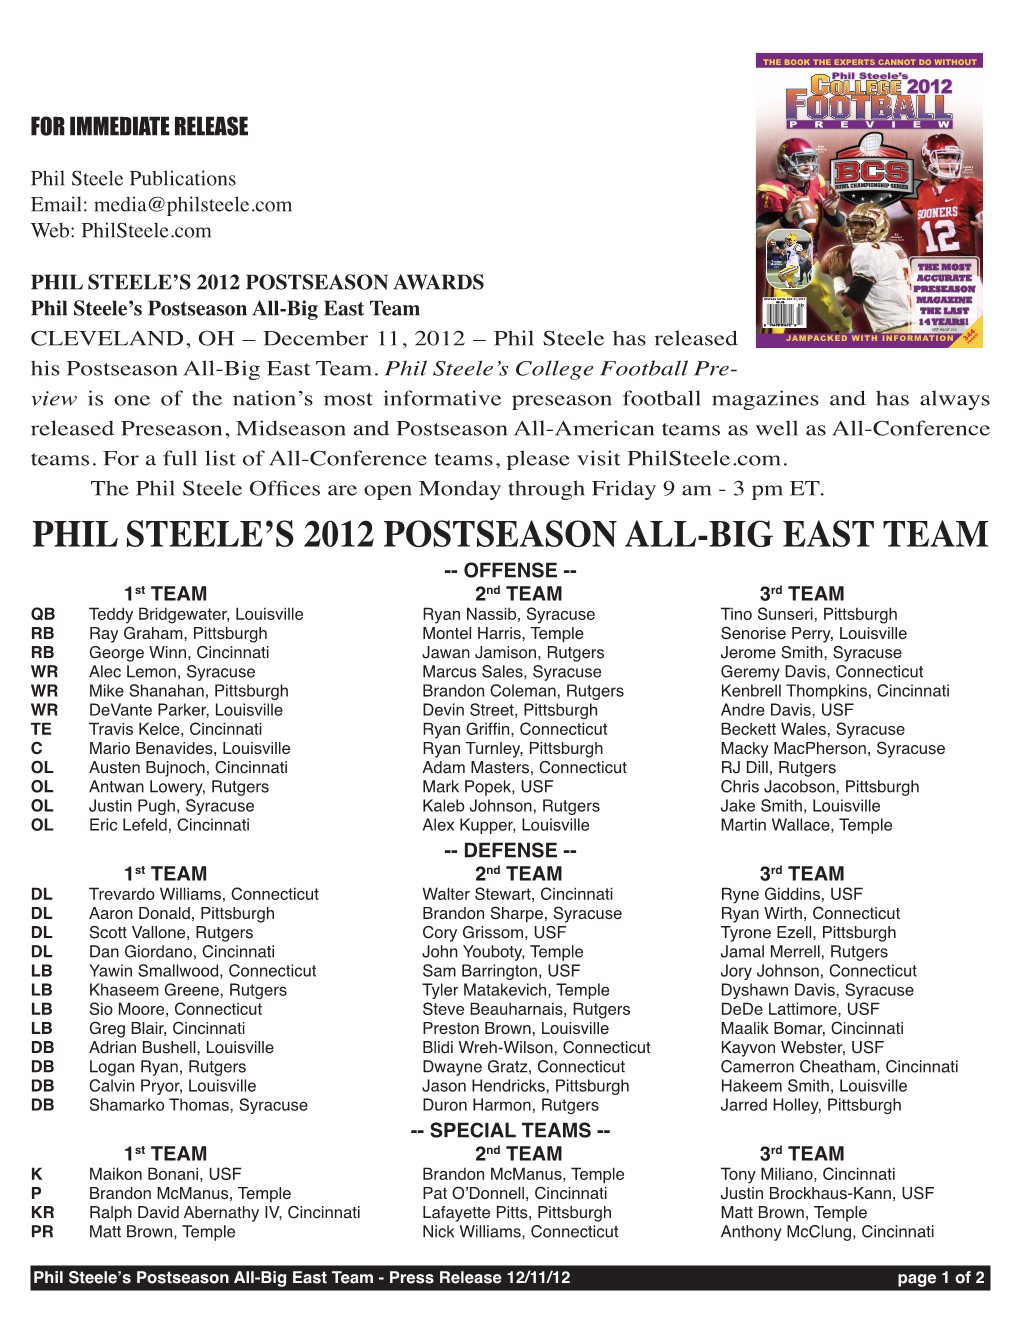 Phil Steele's 2012 Postseason All-Big East Team